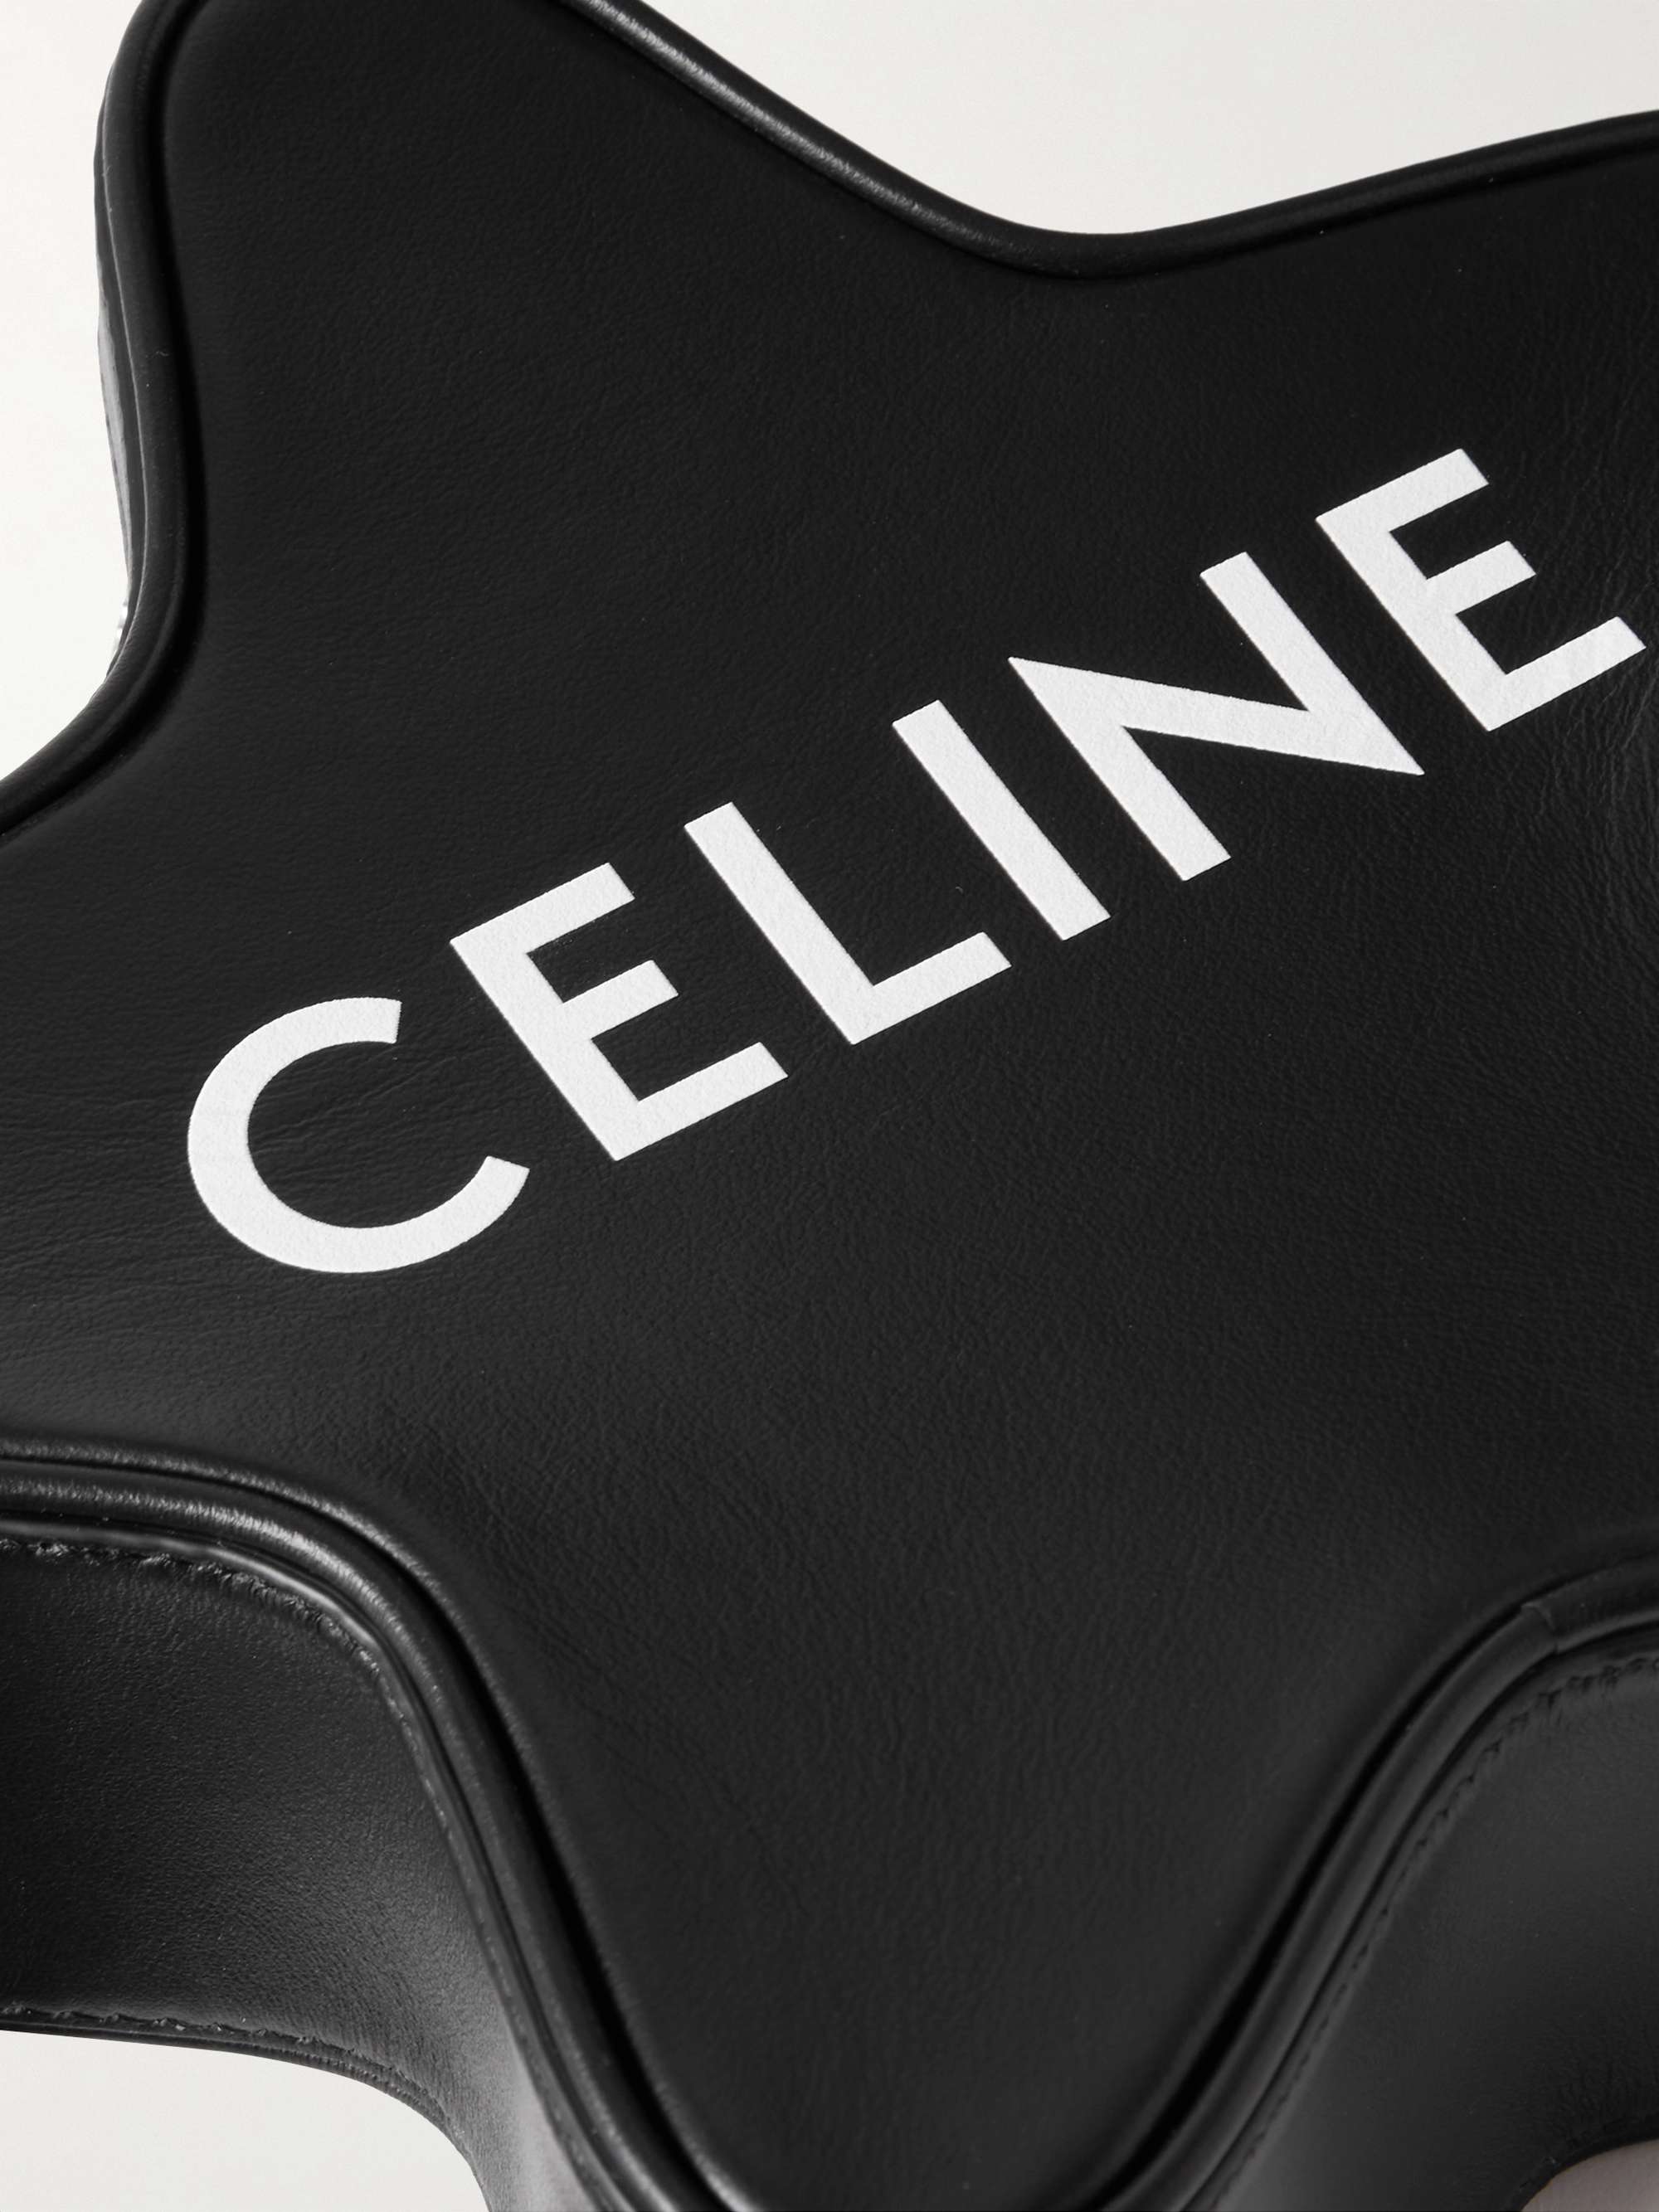 CELINE HOMME Etoile Small Logo-Print Leather Messenger Bag